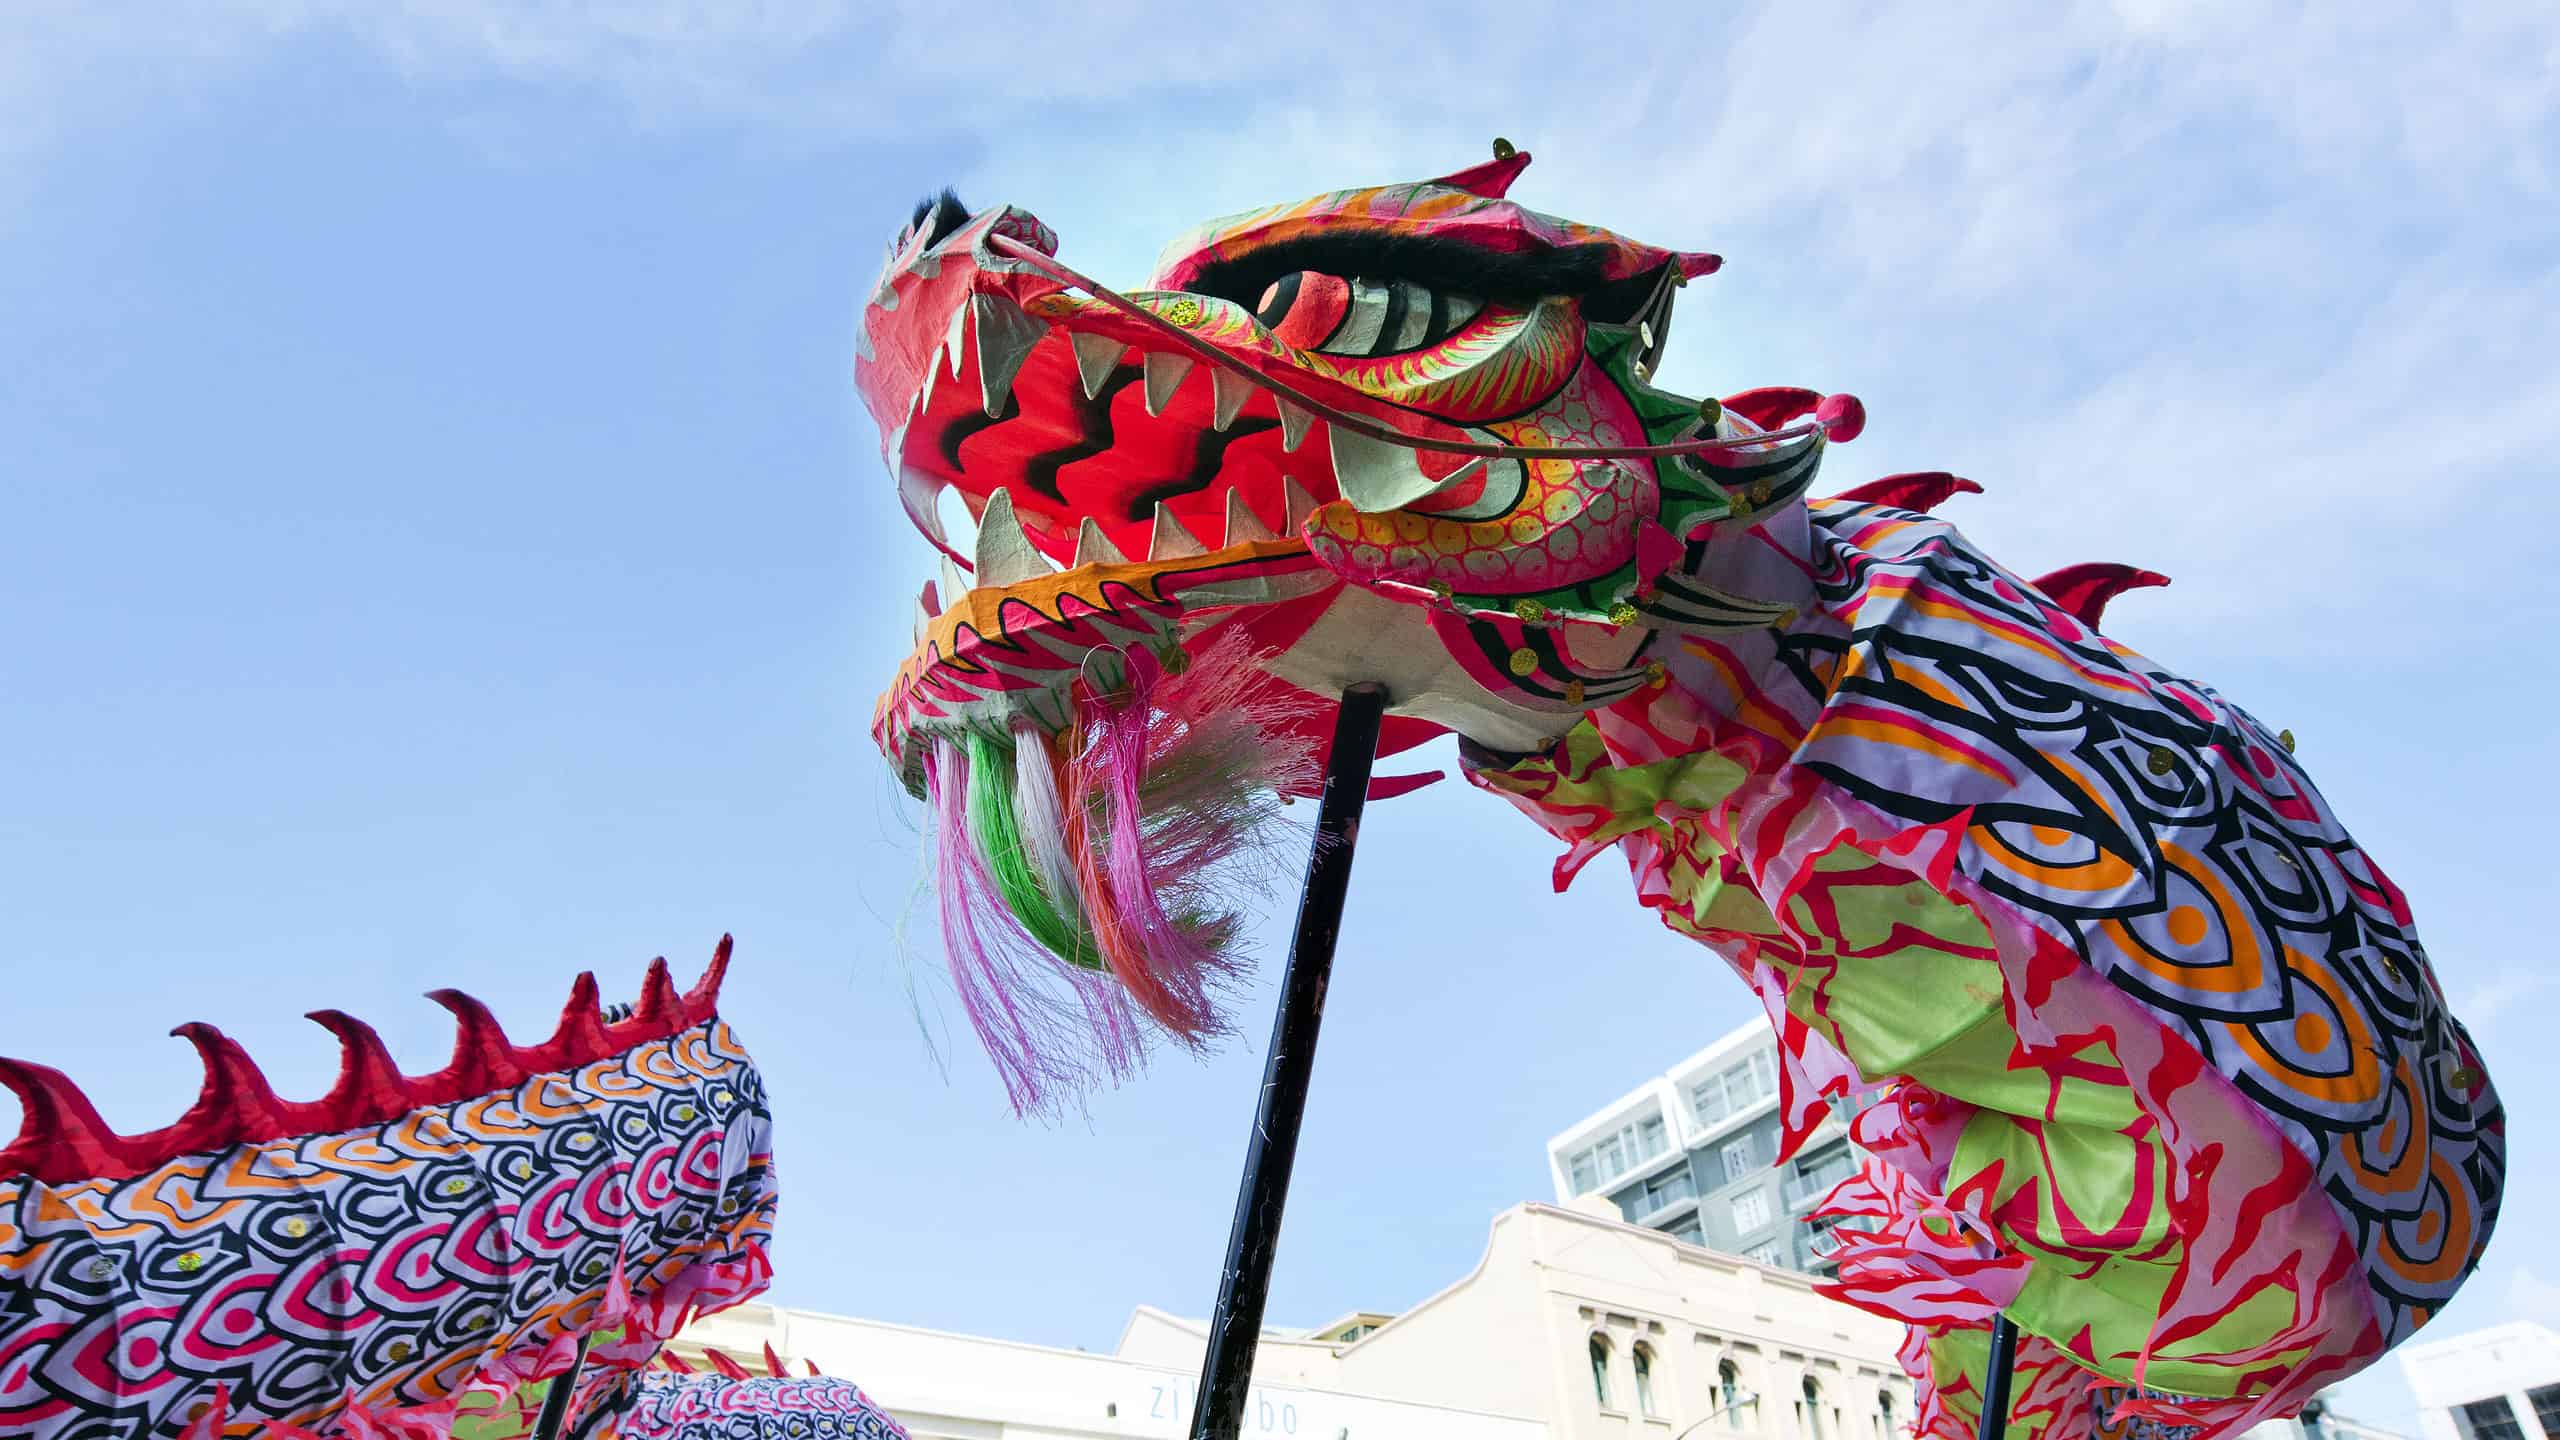 Chinese Mythology Dragon